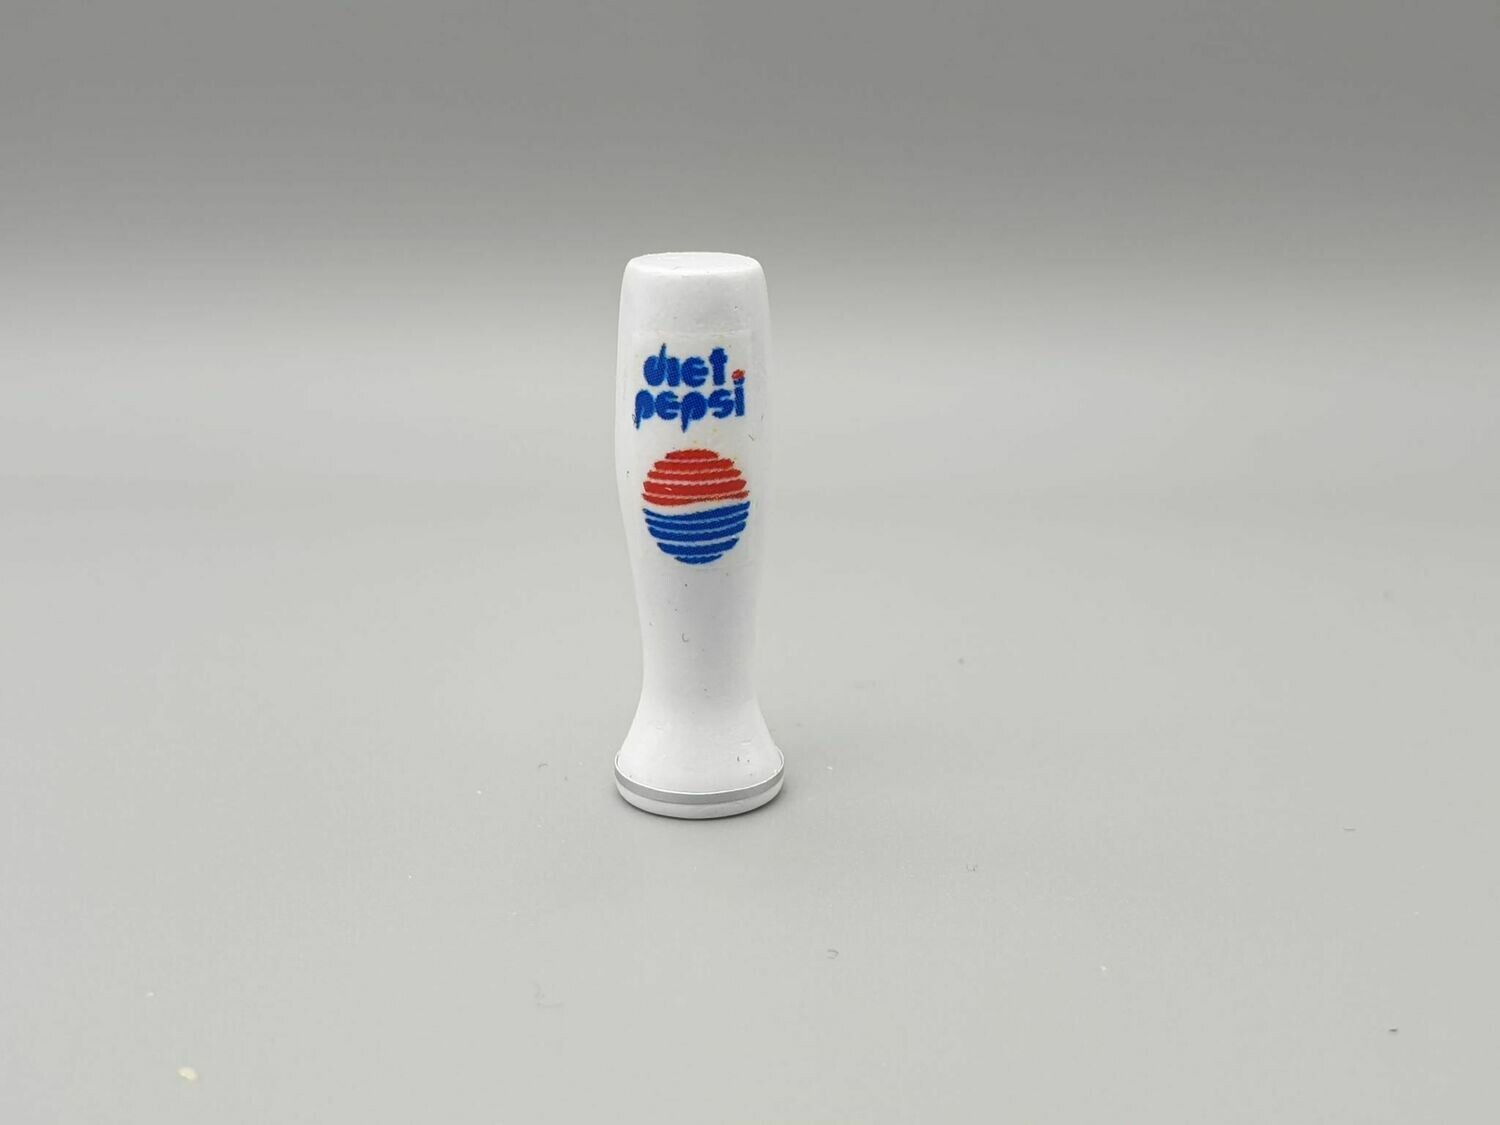 DeLorean 1:8 scale Diet Pepsi